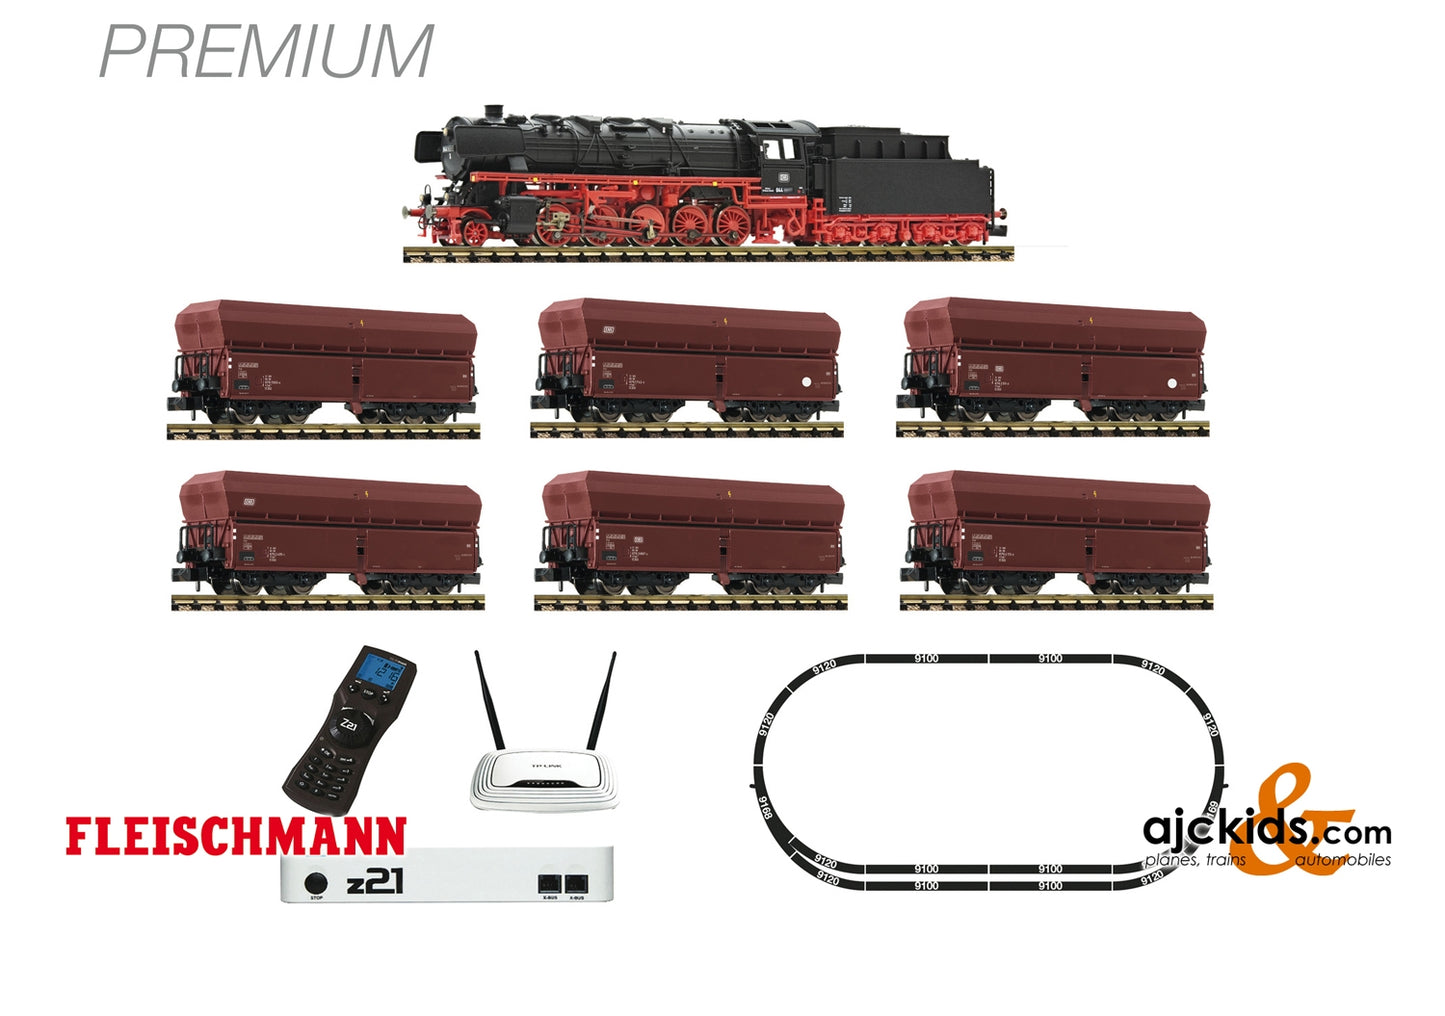 Fleischmann 931898 - Premium z21 digital set: Steam locomotive class 044 and ore train